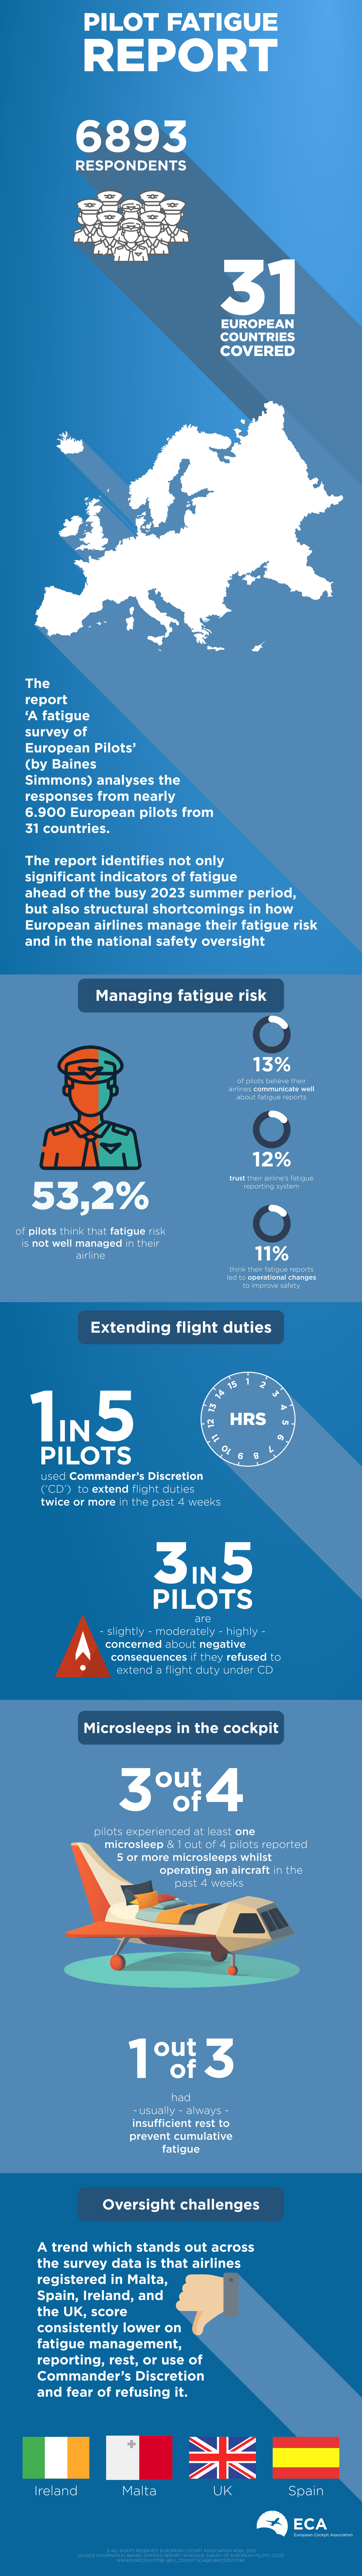 infographic pilot fatigue report